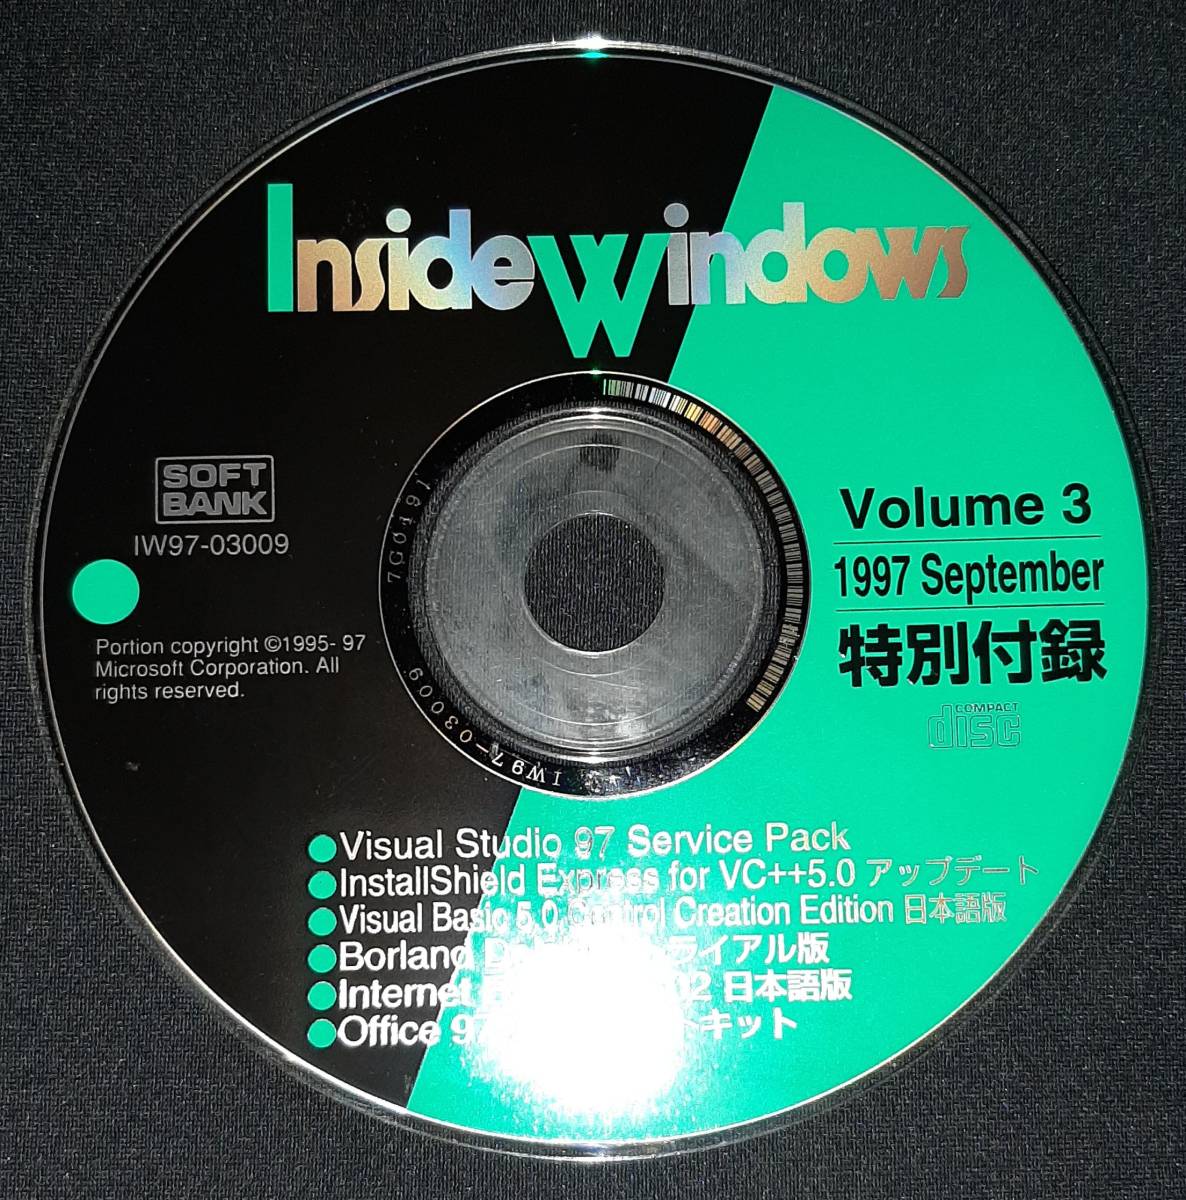 ソフトバンク Inside Windows 1997年9月号 Winsockネットワークプログラミング基礎と実践/CD-ROM Visual Studio 97 Service Packなど